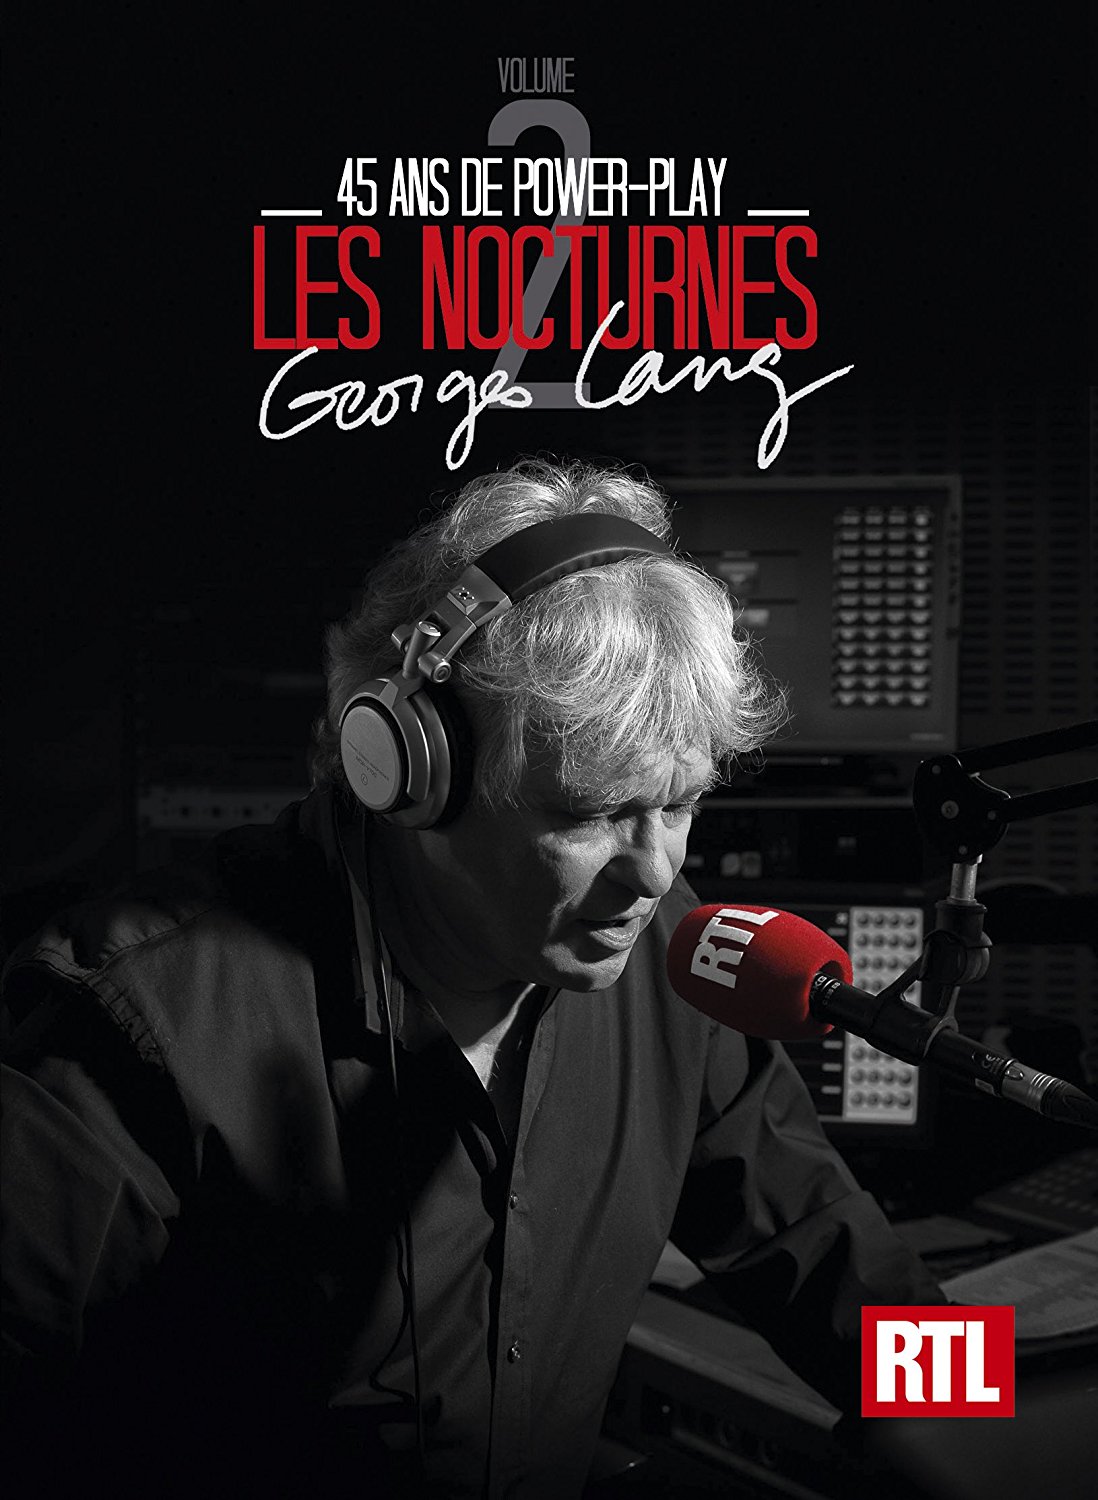 Les Nocturnes RTL 45 Ans Georges Lang (Coffret 4cd), CD pas cher Amazon